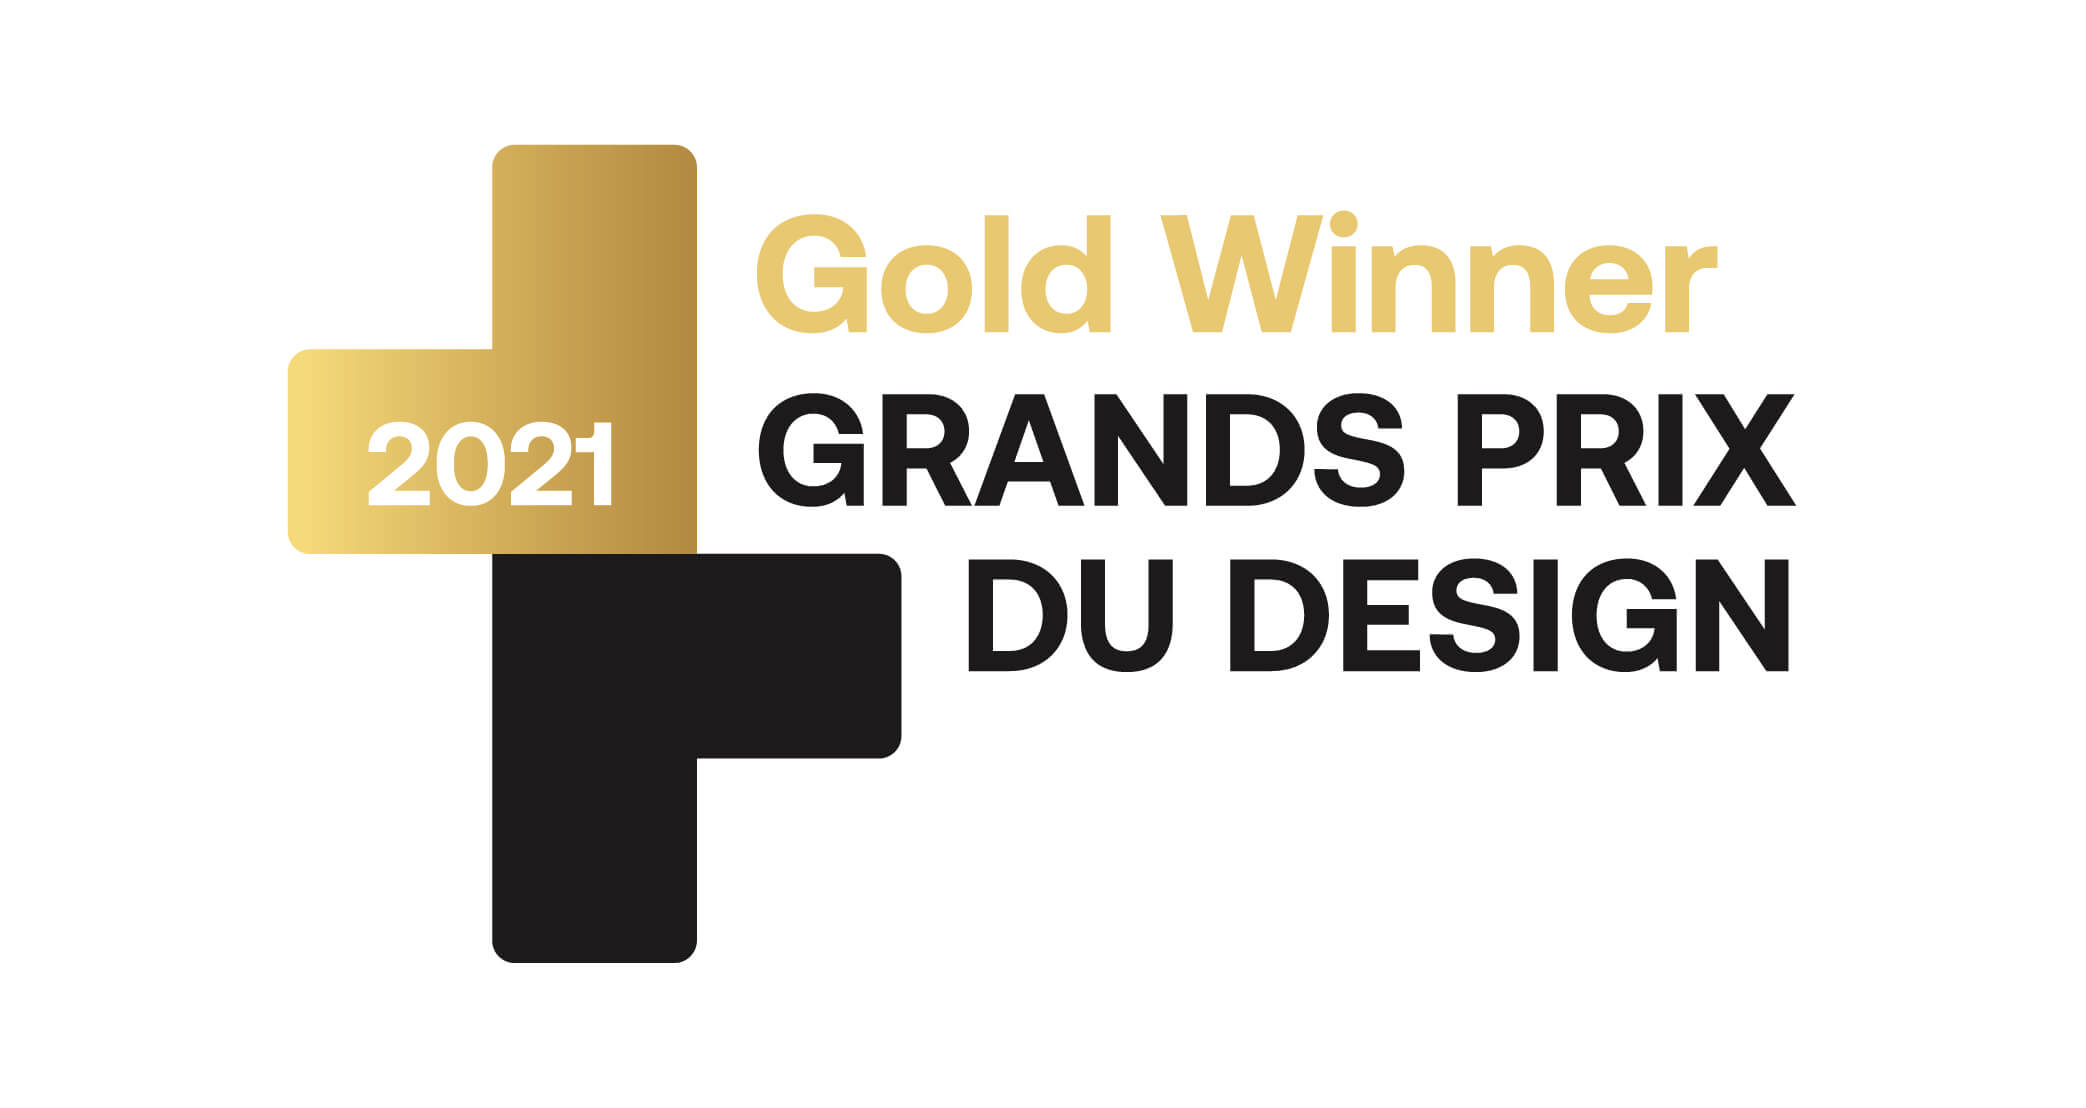 GRAND PRIX DU DESIGN Gold Winner 2021 Badge